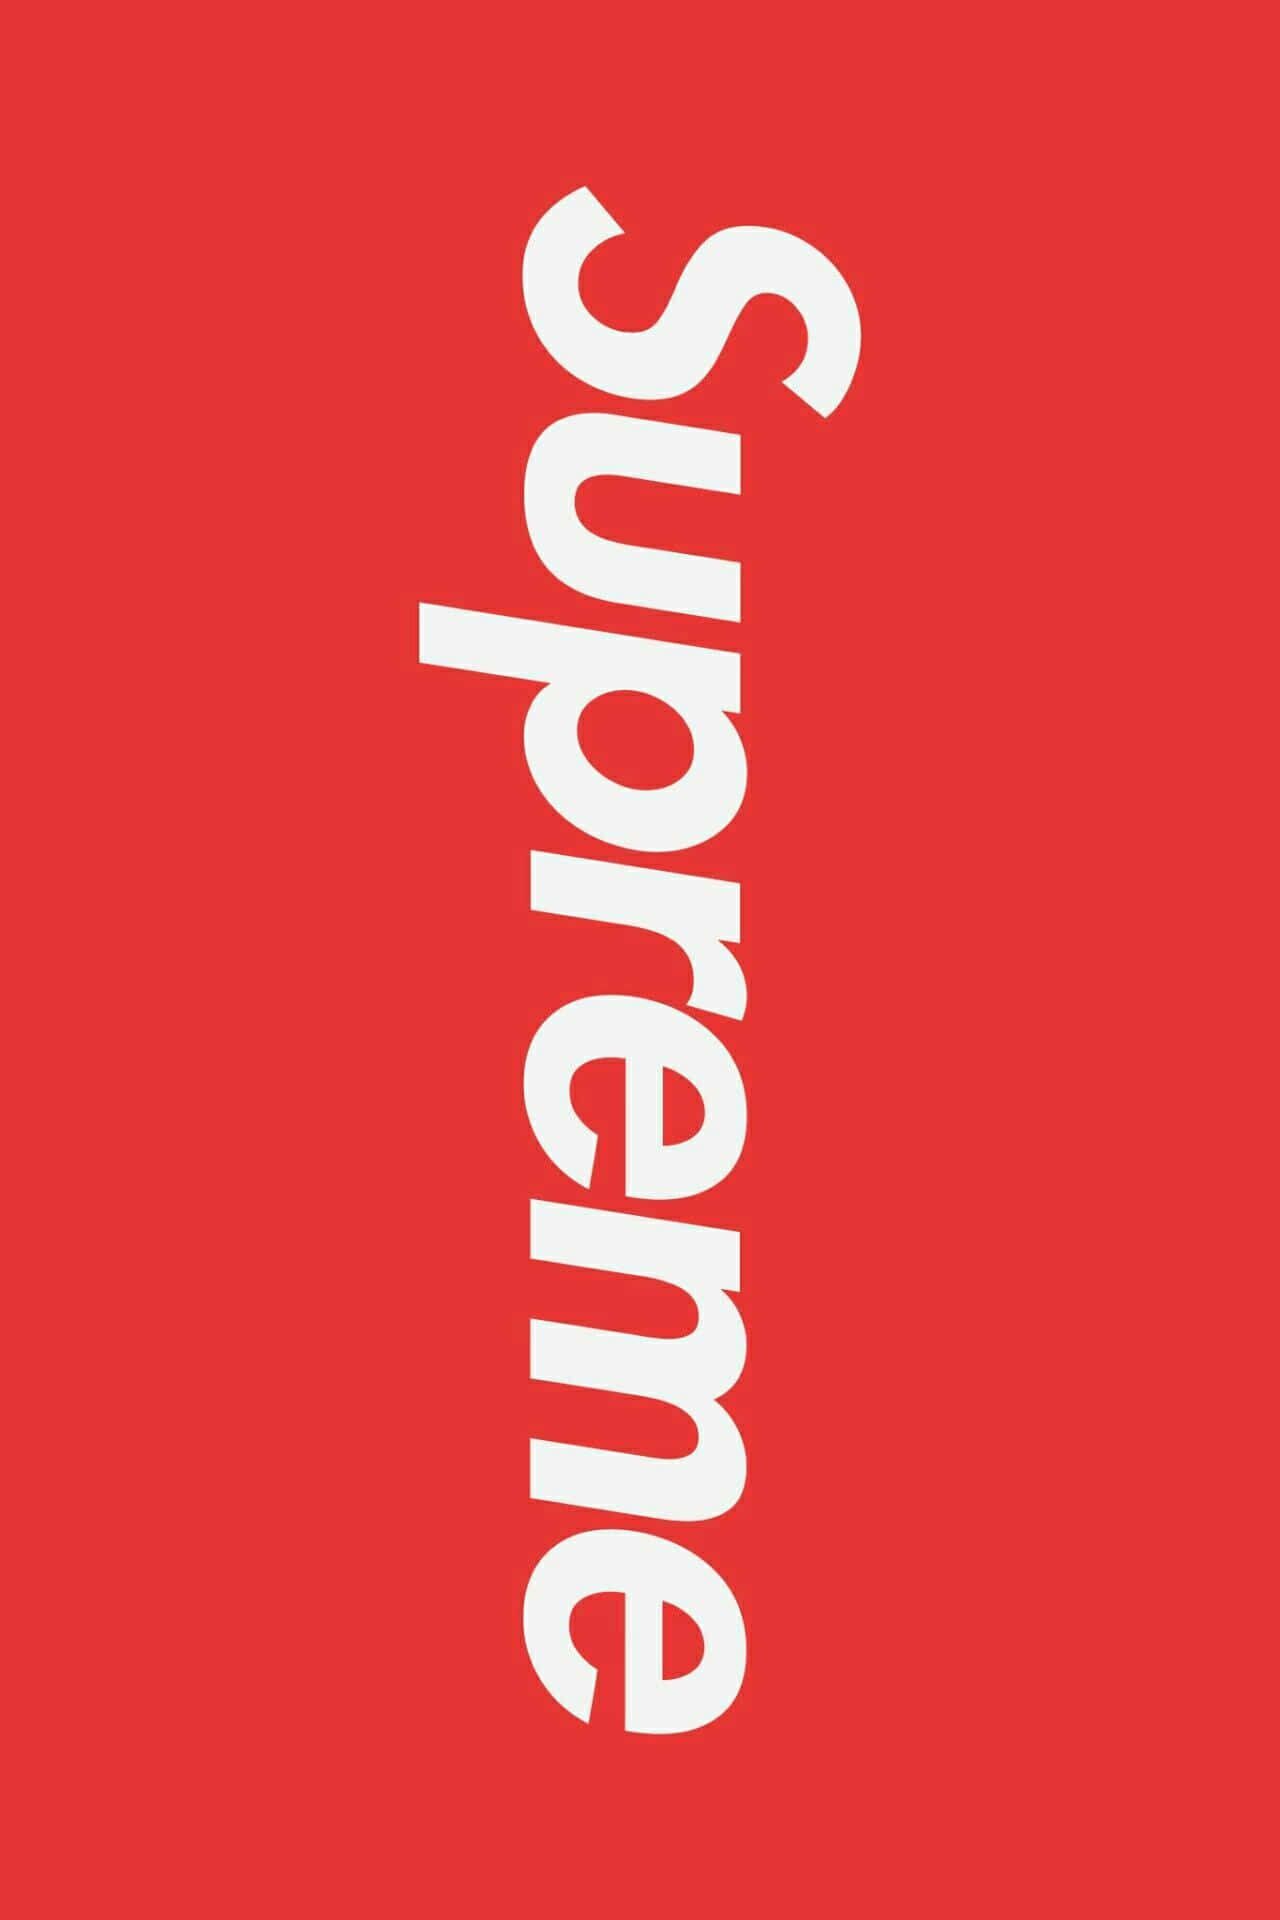 Logotipode Supreme En Un Fondo Rojo Fondo de pantalla